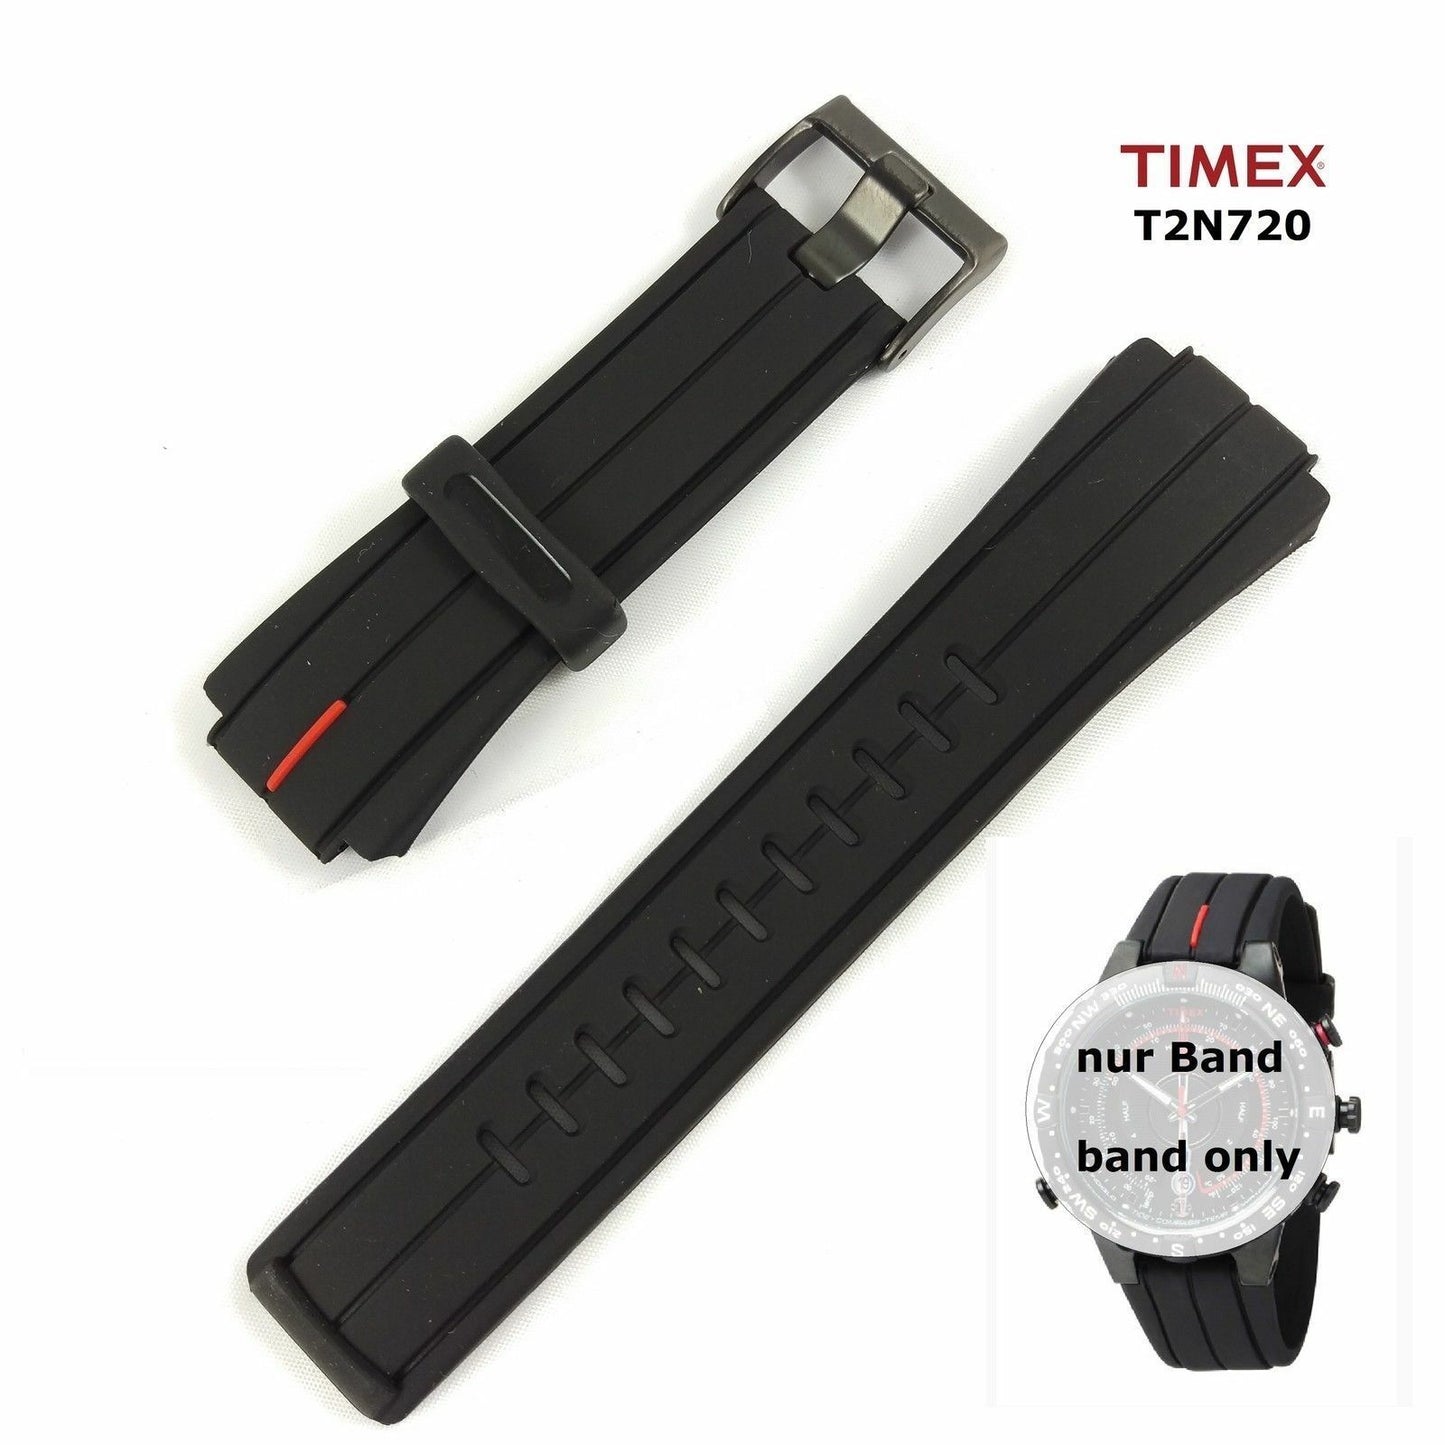 Timex Ersatzarmband T2N720 (T45581) passt T2N723 T49861 T2P140 T2N740 T2N721 etc